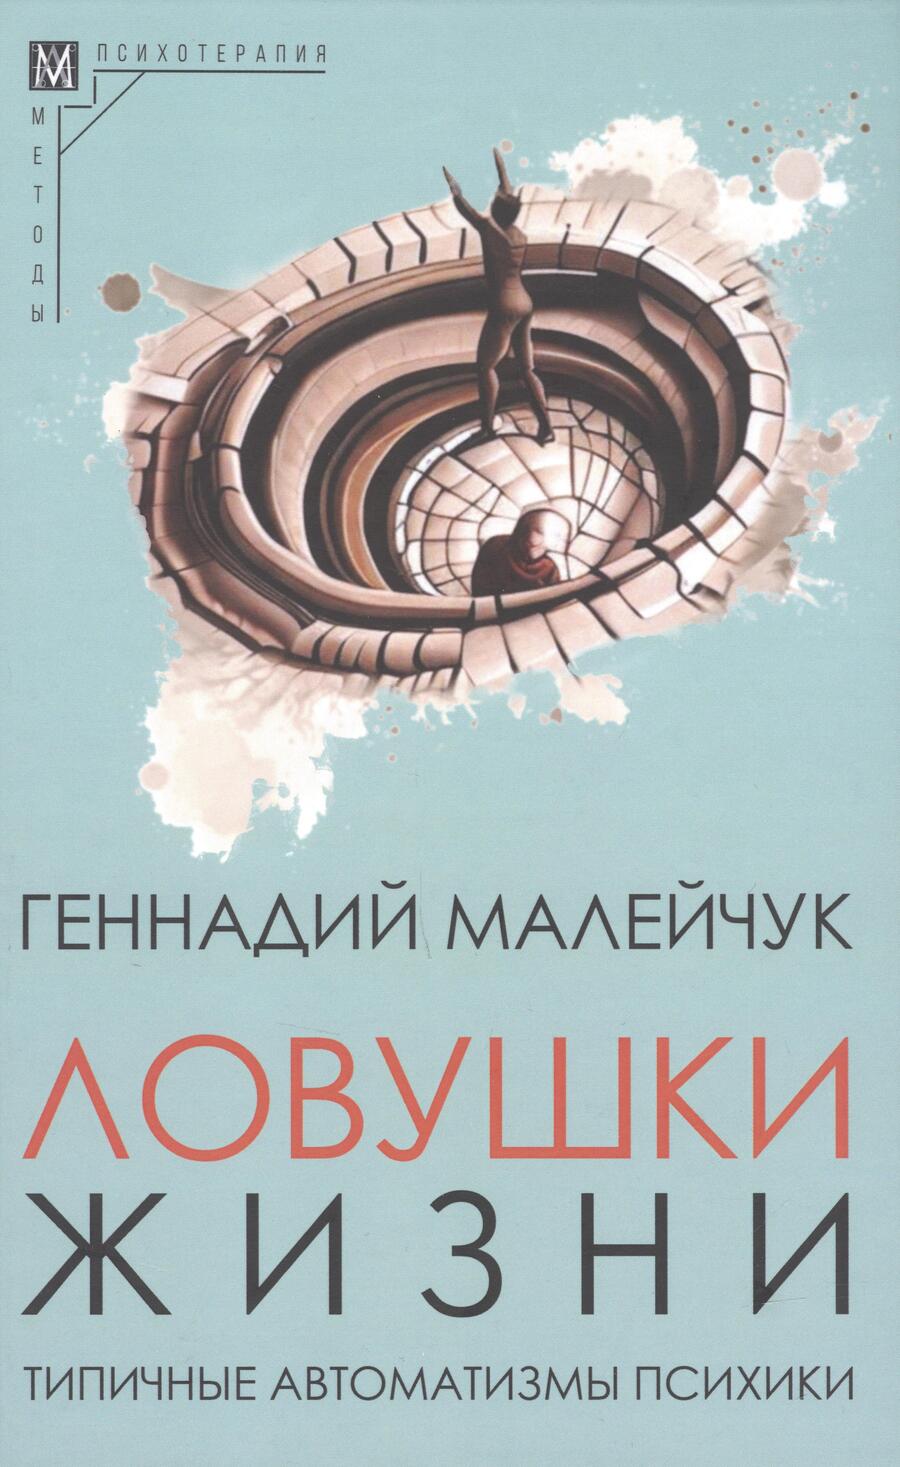 Обложка книги "Малейчук: Ловушки жизни. Типичные автоматизмы психики"